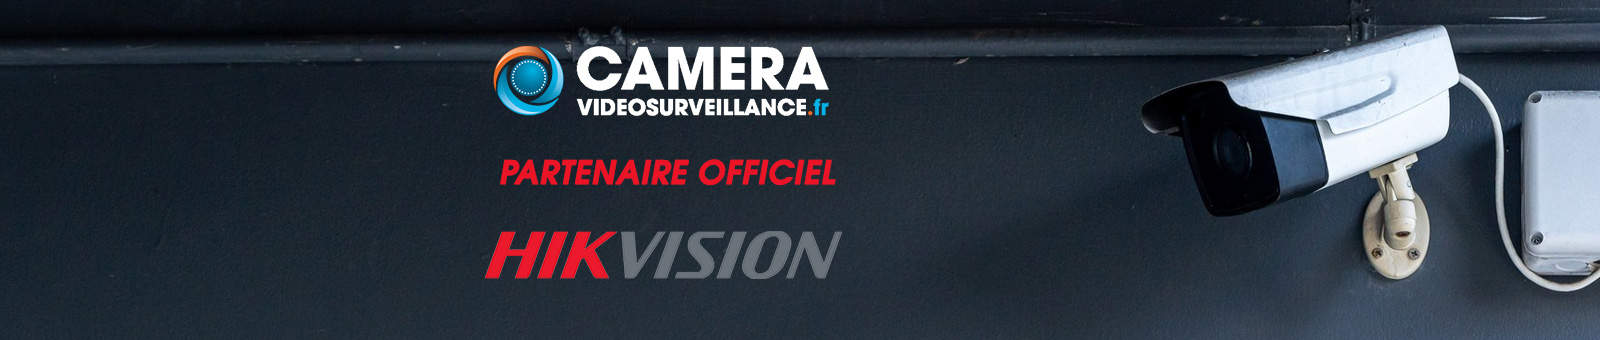 camera-videosurveillance.fr est partenaire officiel de la marque numéro un mondial de vidéosurveillance, Hikvision